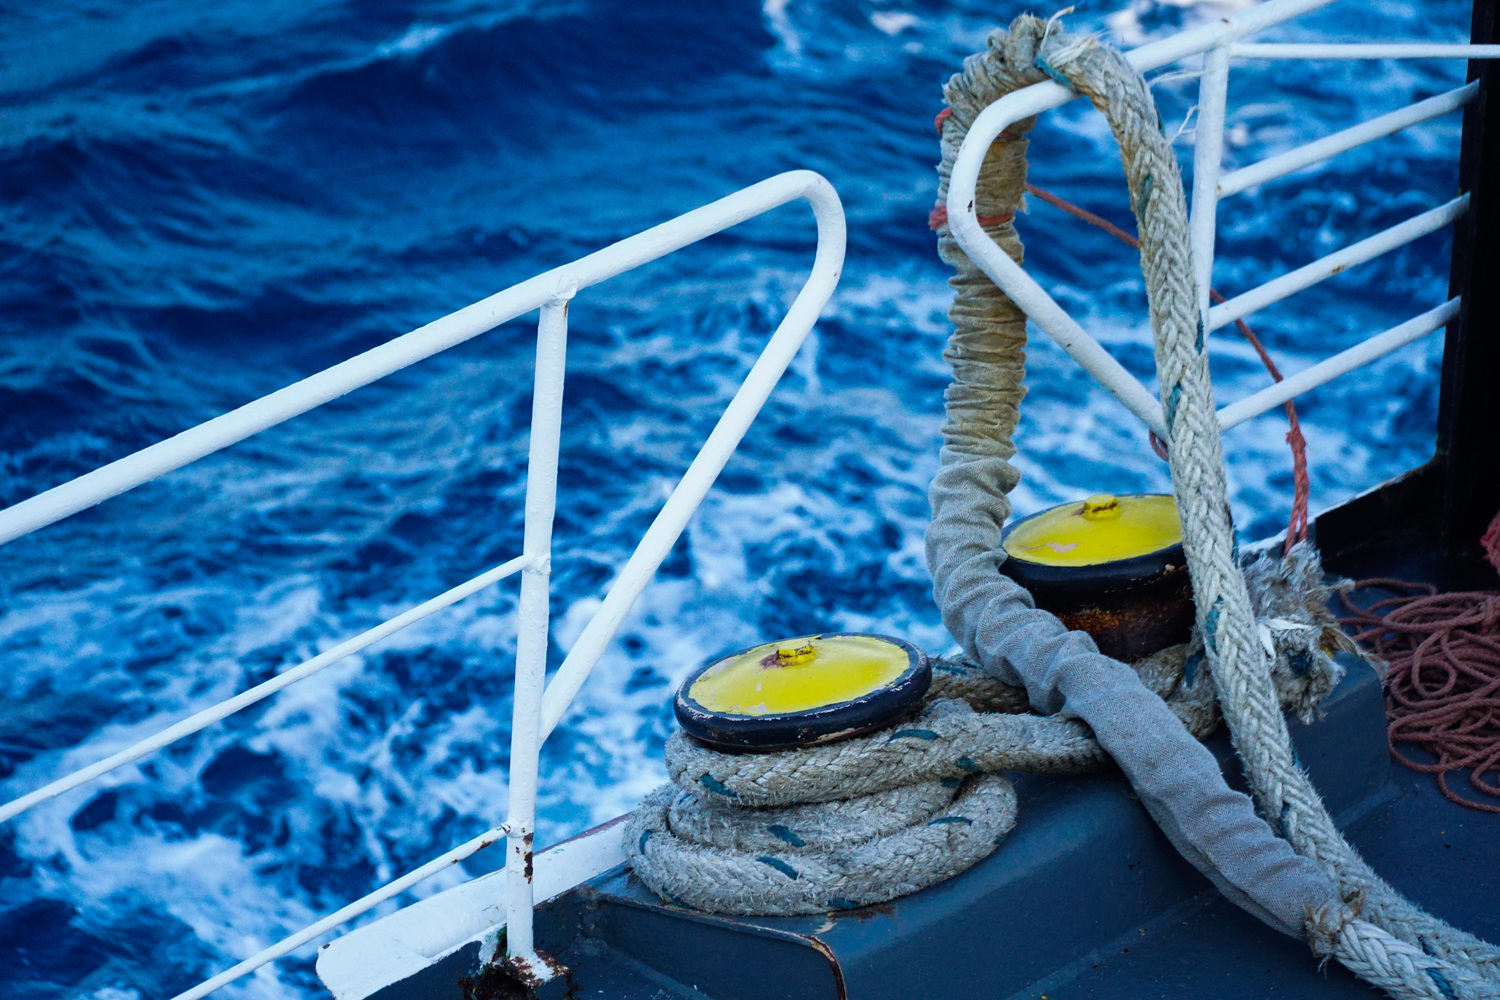 Ταλαιπωρία για επιβάτες πλοίου: Επιστρέφει στον Πειραιά λόγω μηχανικής βλάβης